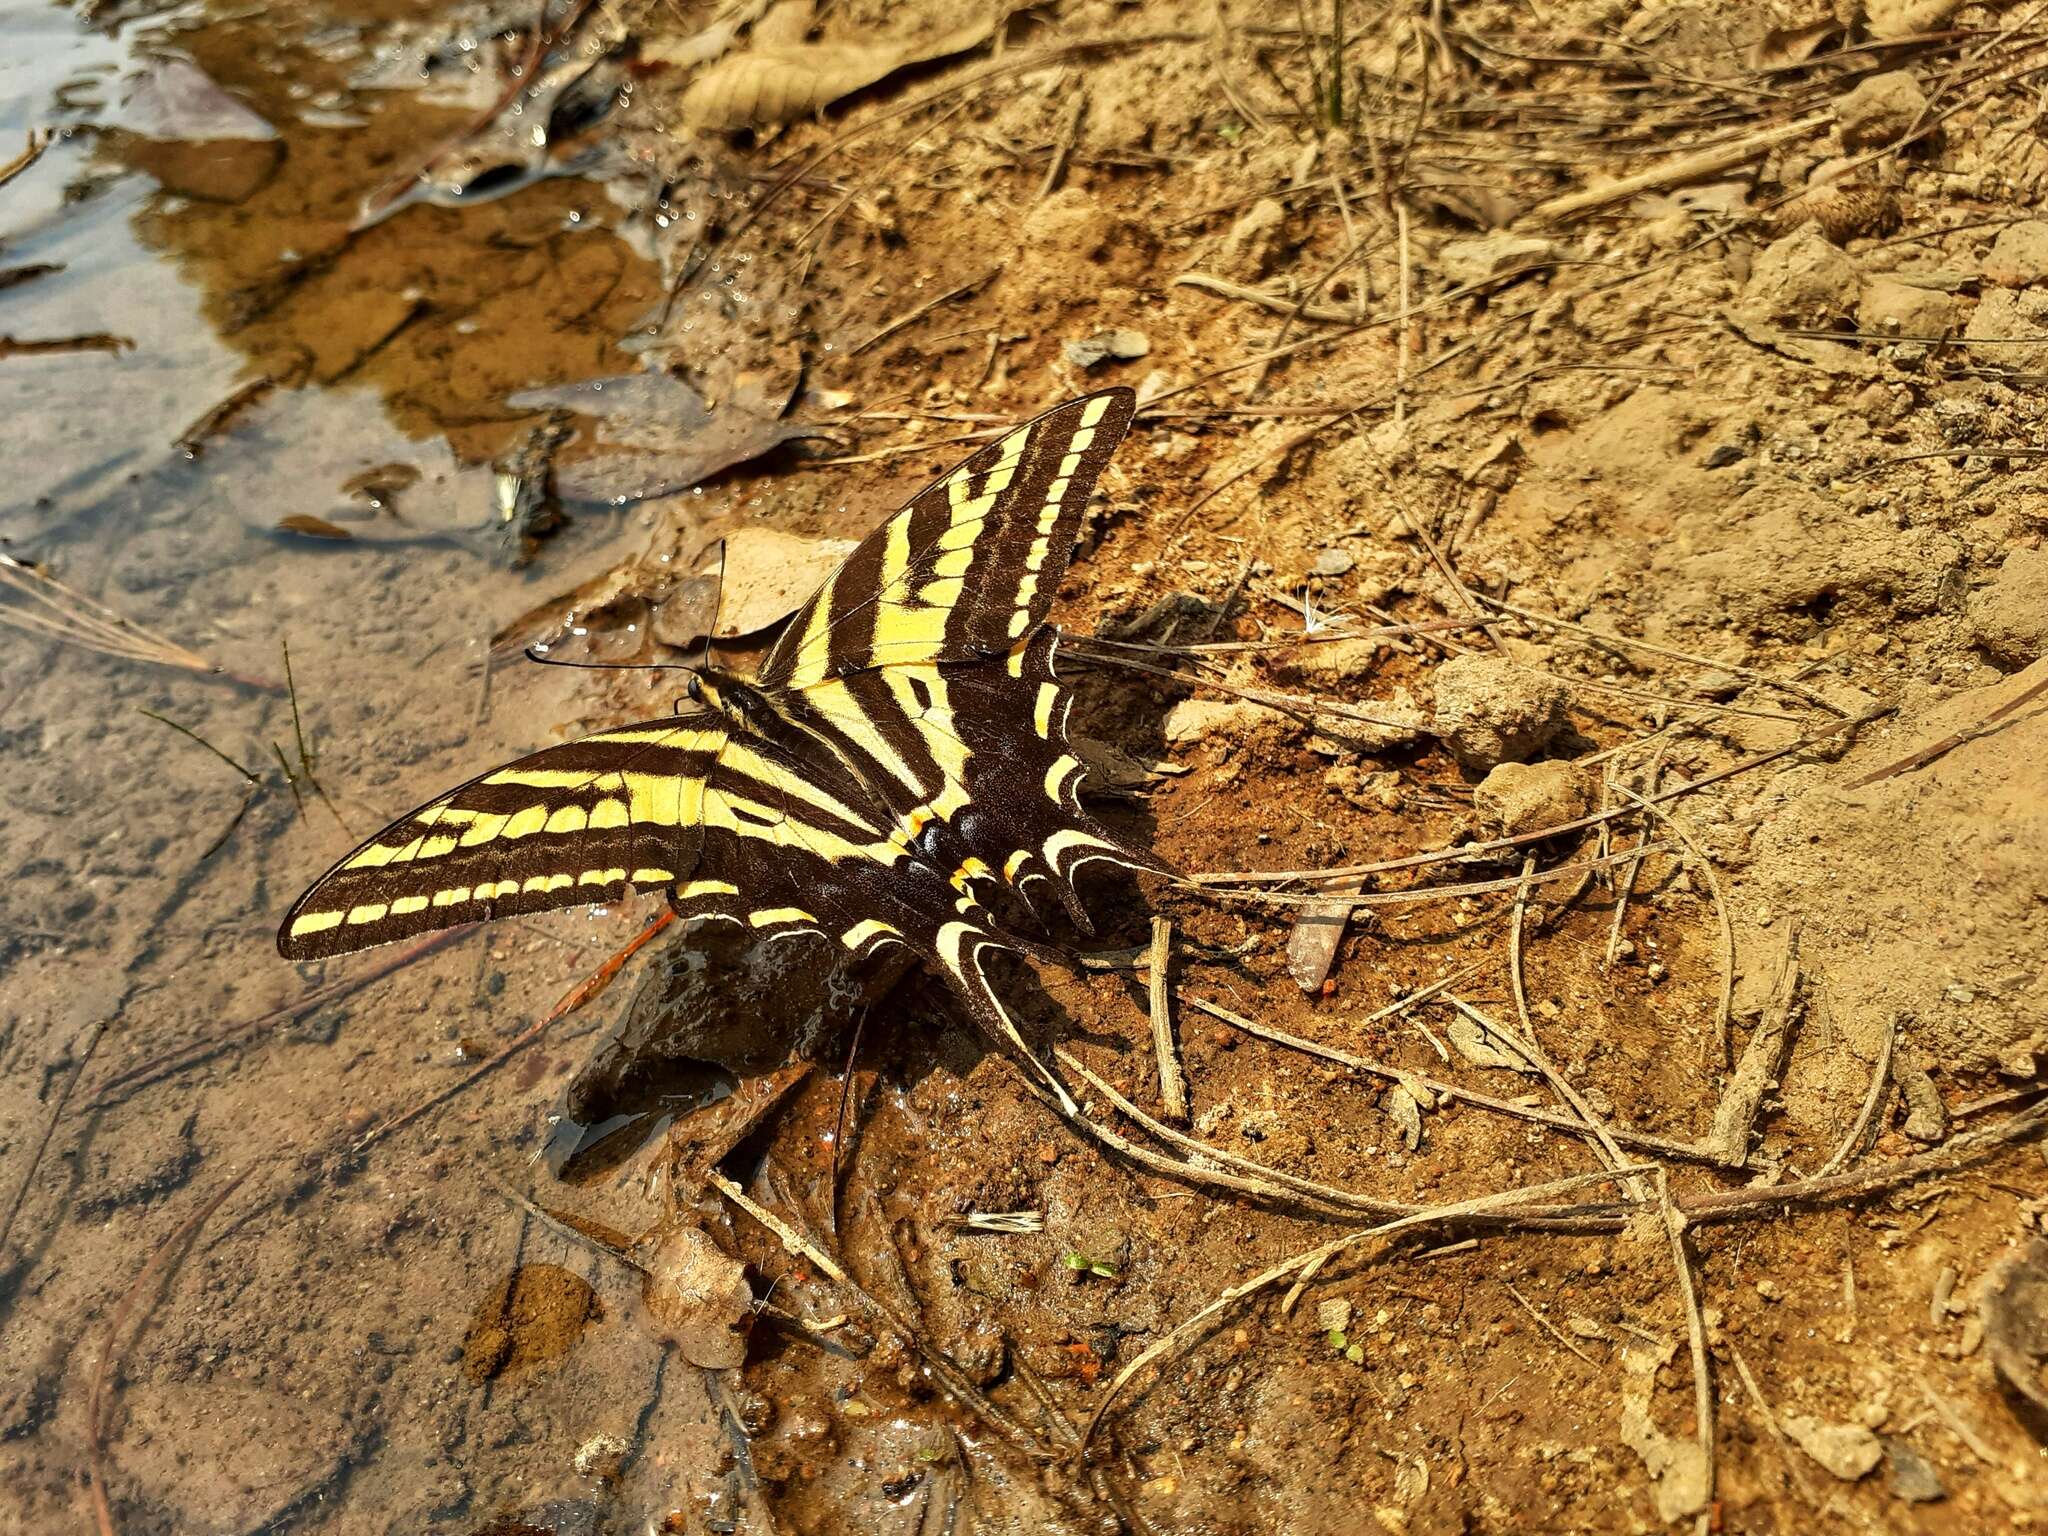 Sivun Papilio pilumnus Boisduval 1836 kuva